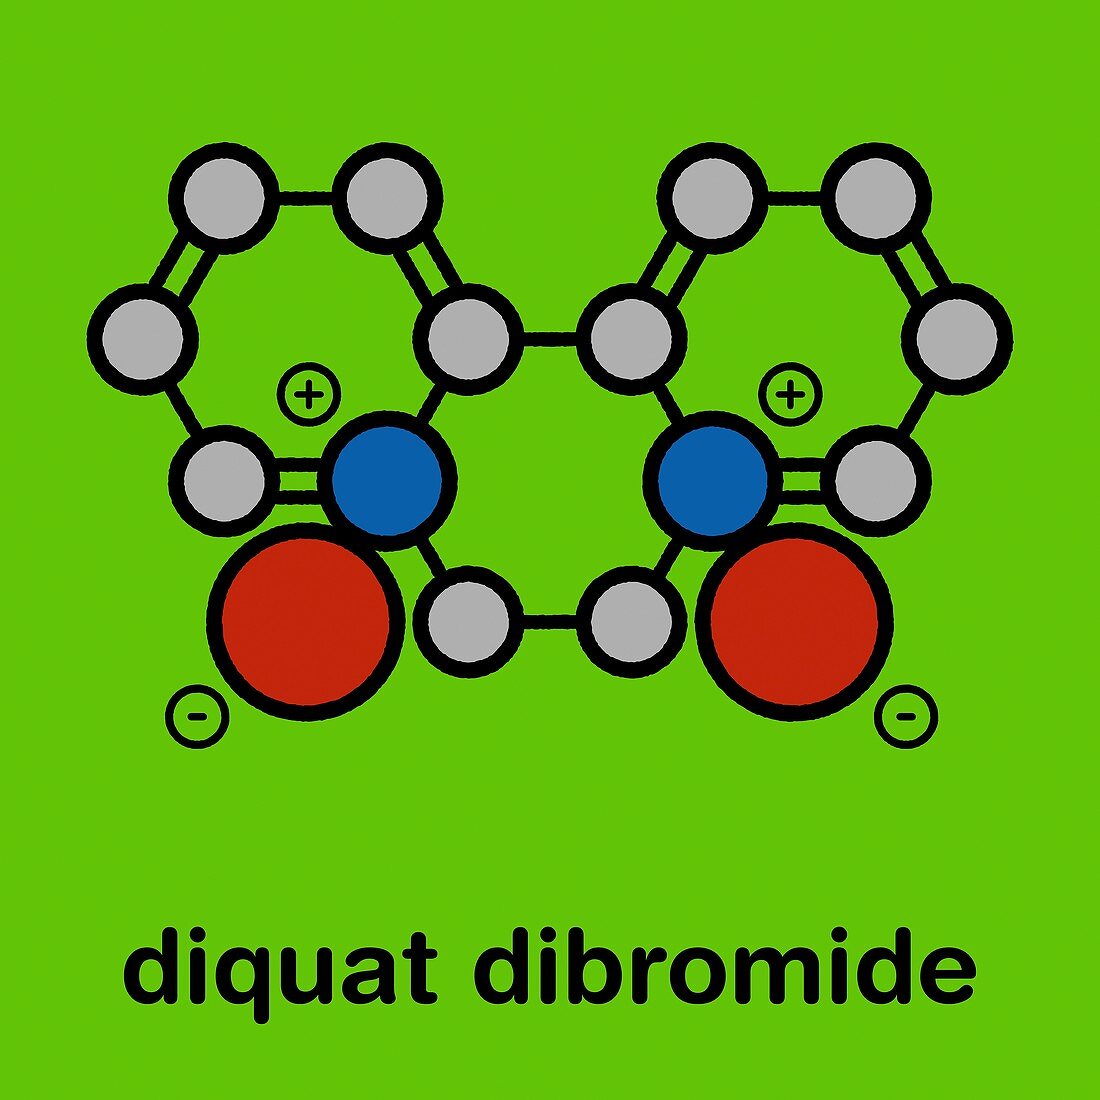 Diquat dibromide contact herbicide molecule, illustration